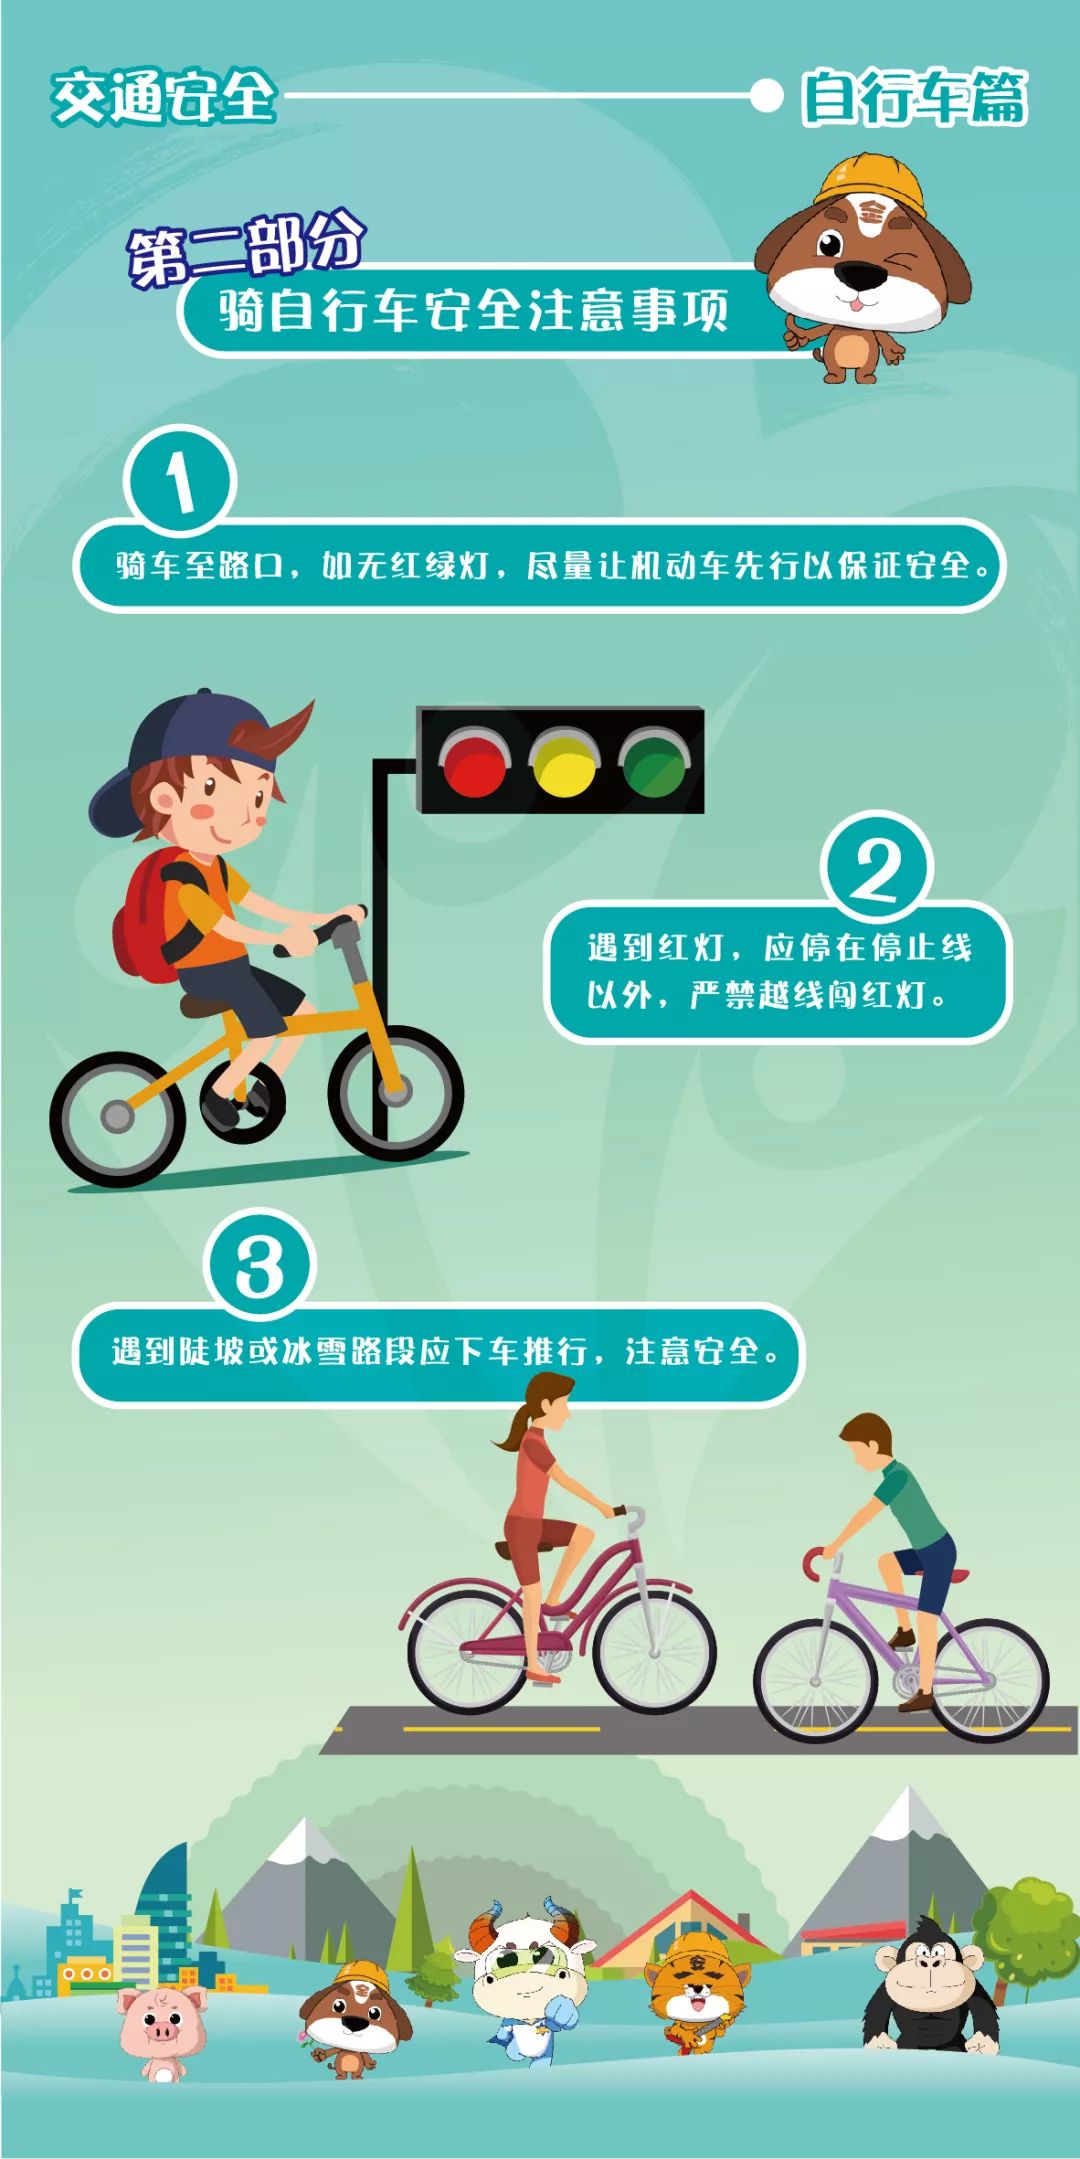 应急宣传进万家|第九期:骑自行车有哪些安全讲究,你知道么?